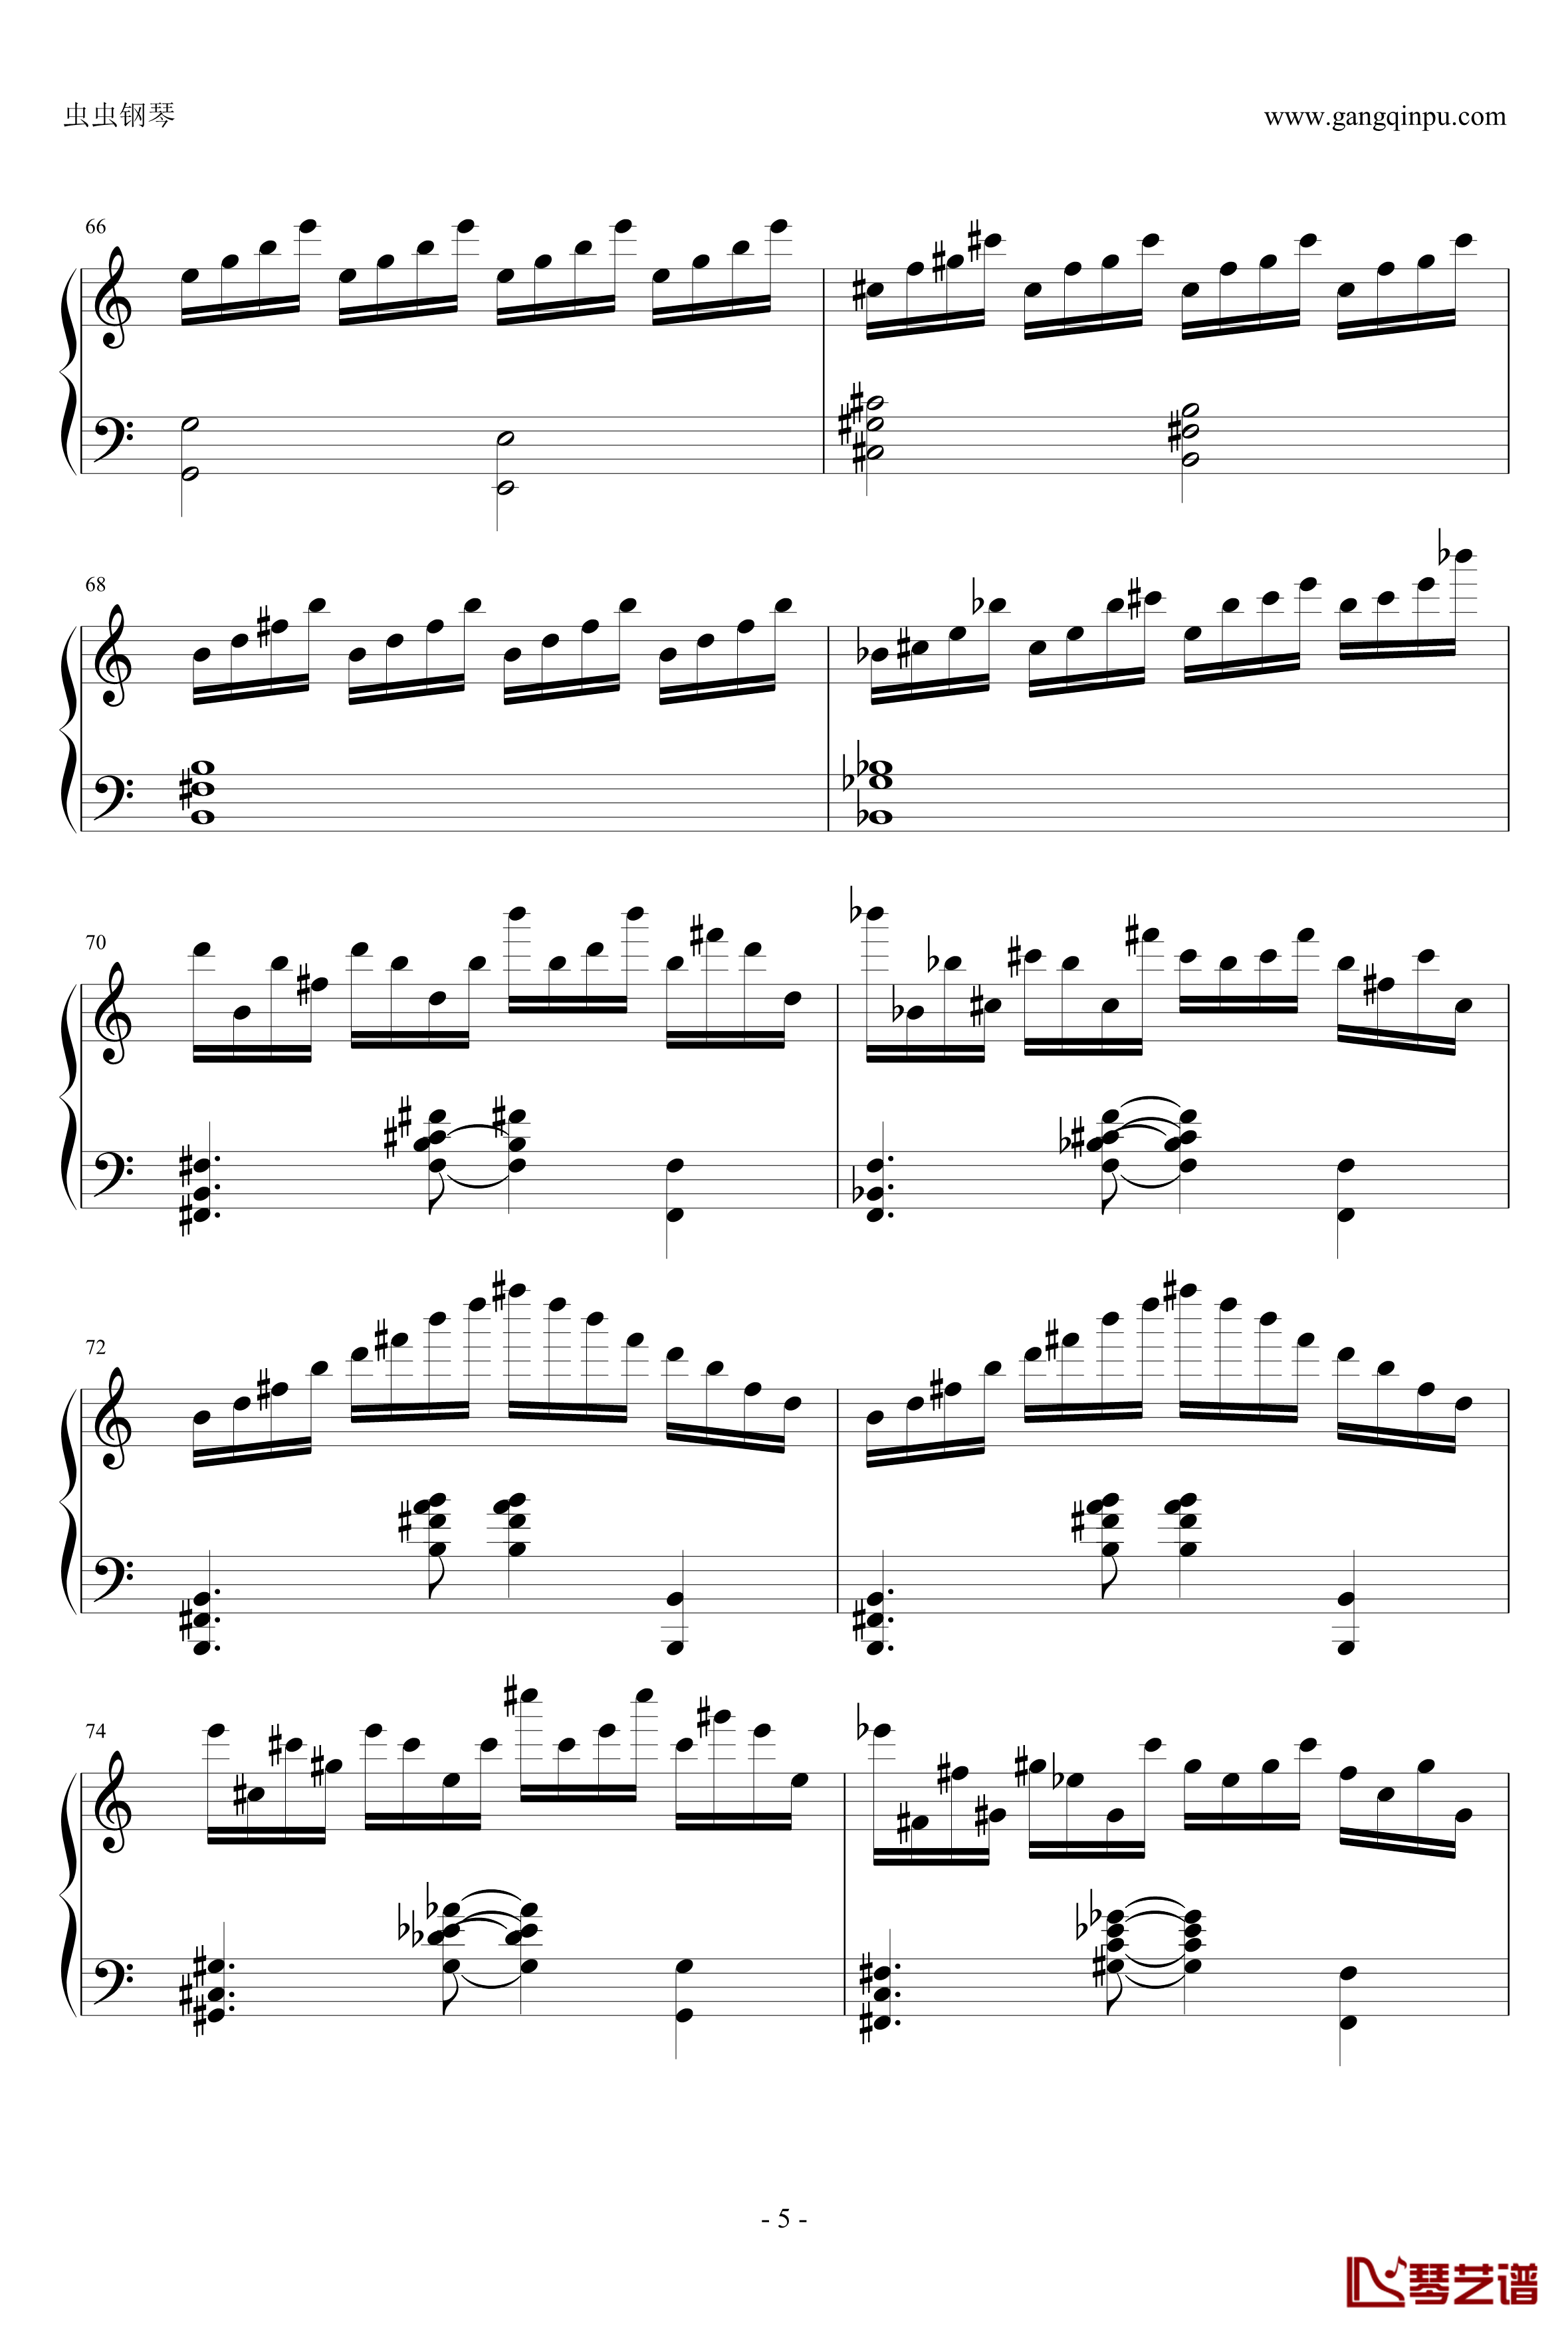 贝多芬V3奏鸣曲钢琴谱-劲舞团改编-劲舞团5